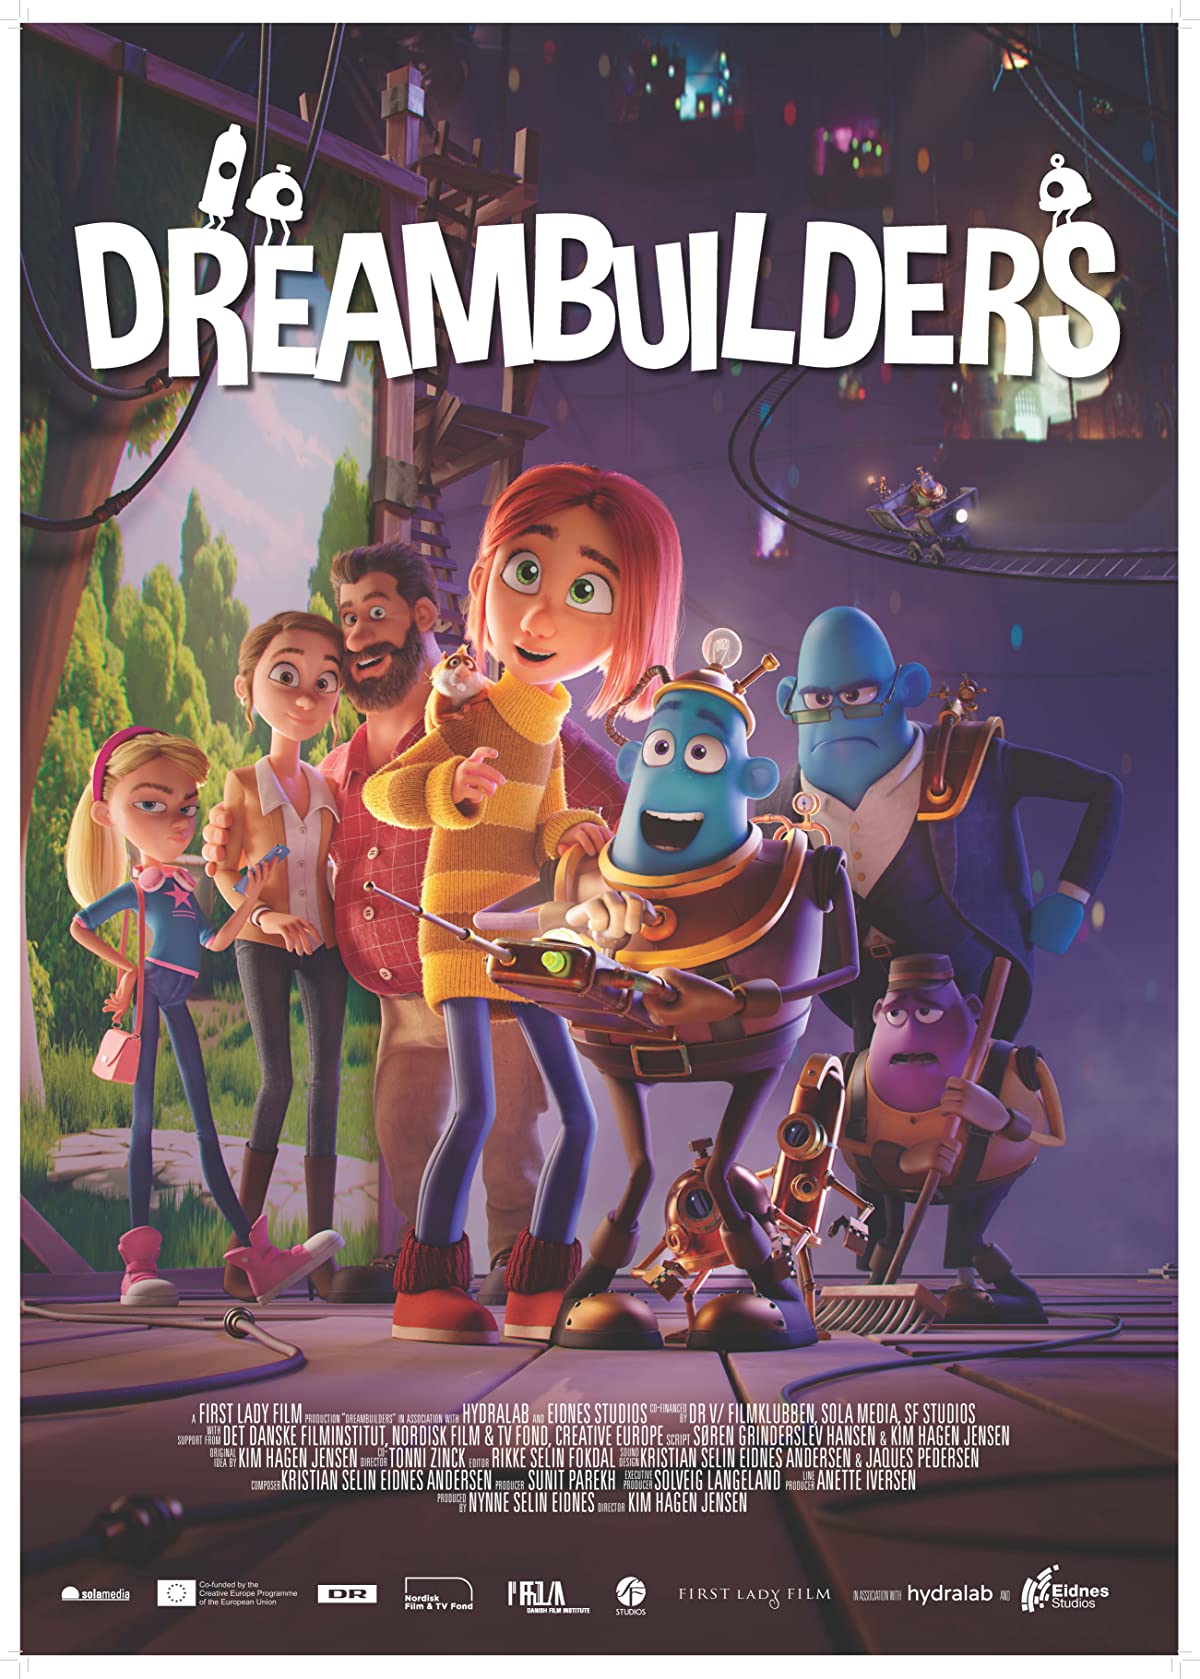 دانلود انیمیشن Dreambuilders 2020 رویاپردازان (دریم بیلدرز) با دوبله فارسی